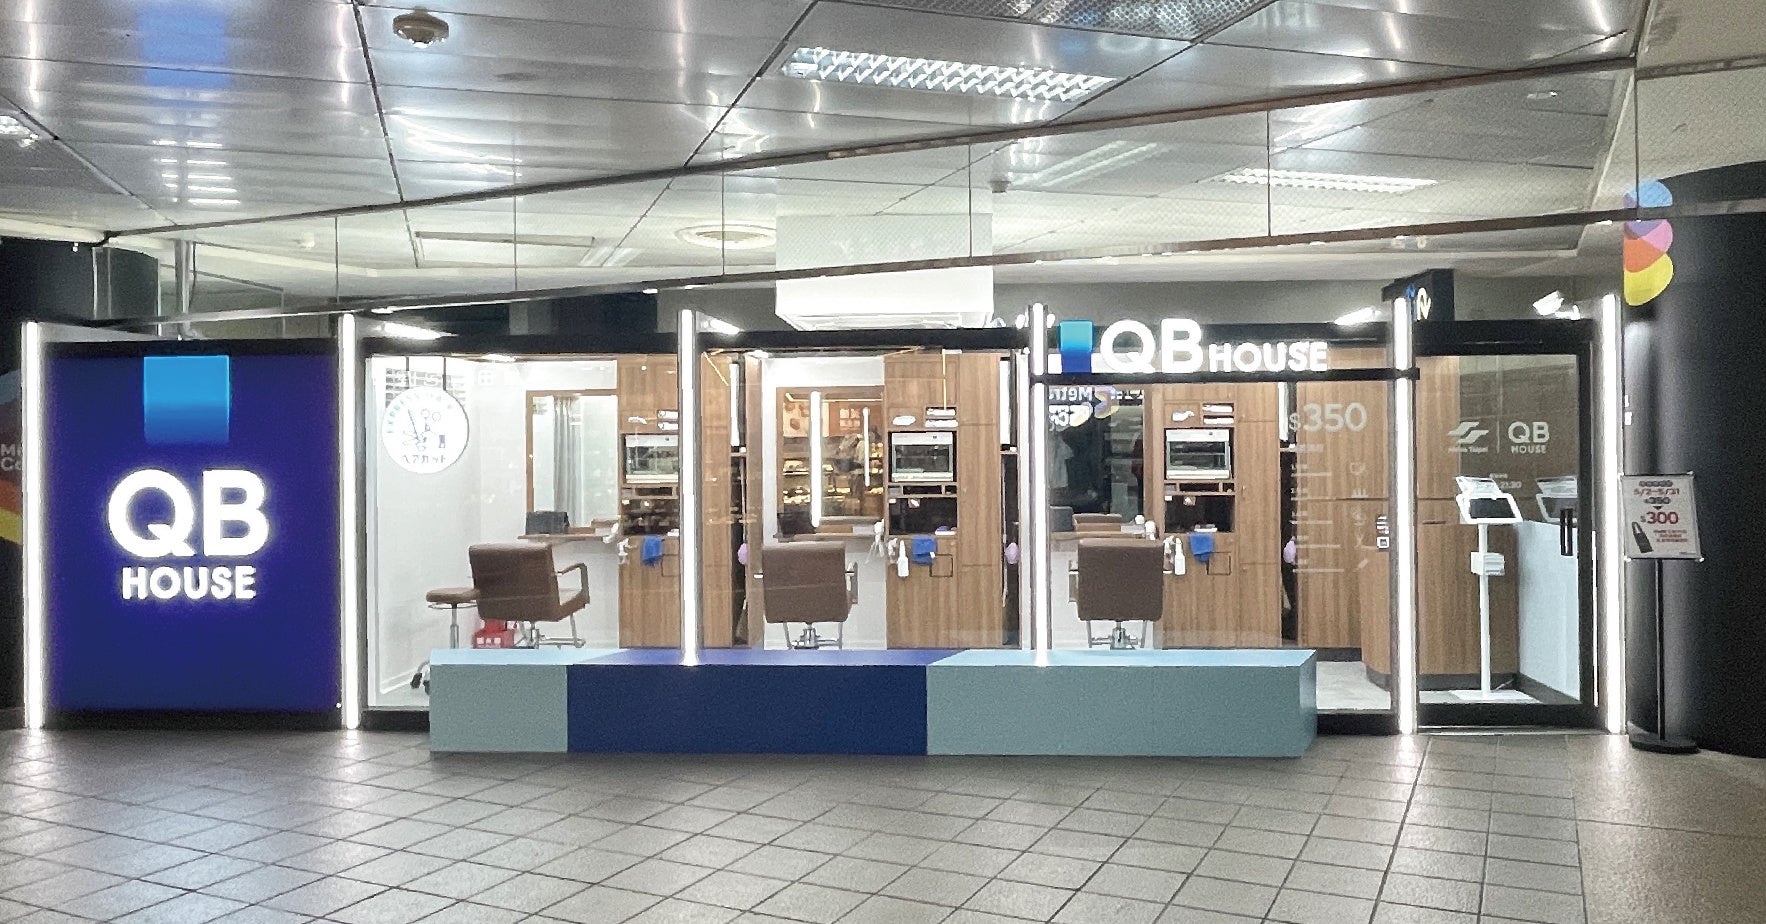 QB HOUSE、台湾の地下鉄「台北MRT」と駅構内に出店する包括契約を締結。環境配慮型店舗として5月3日に1号店オープン！